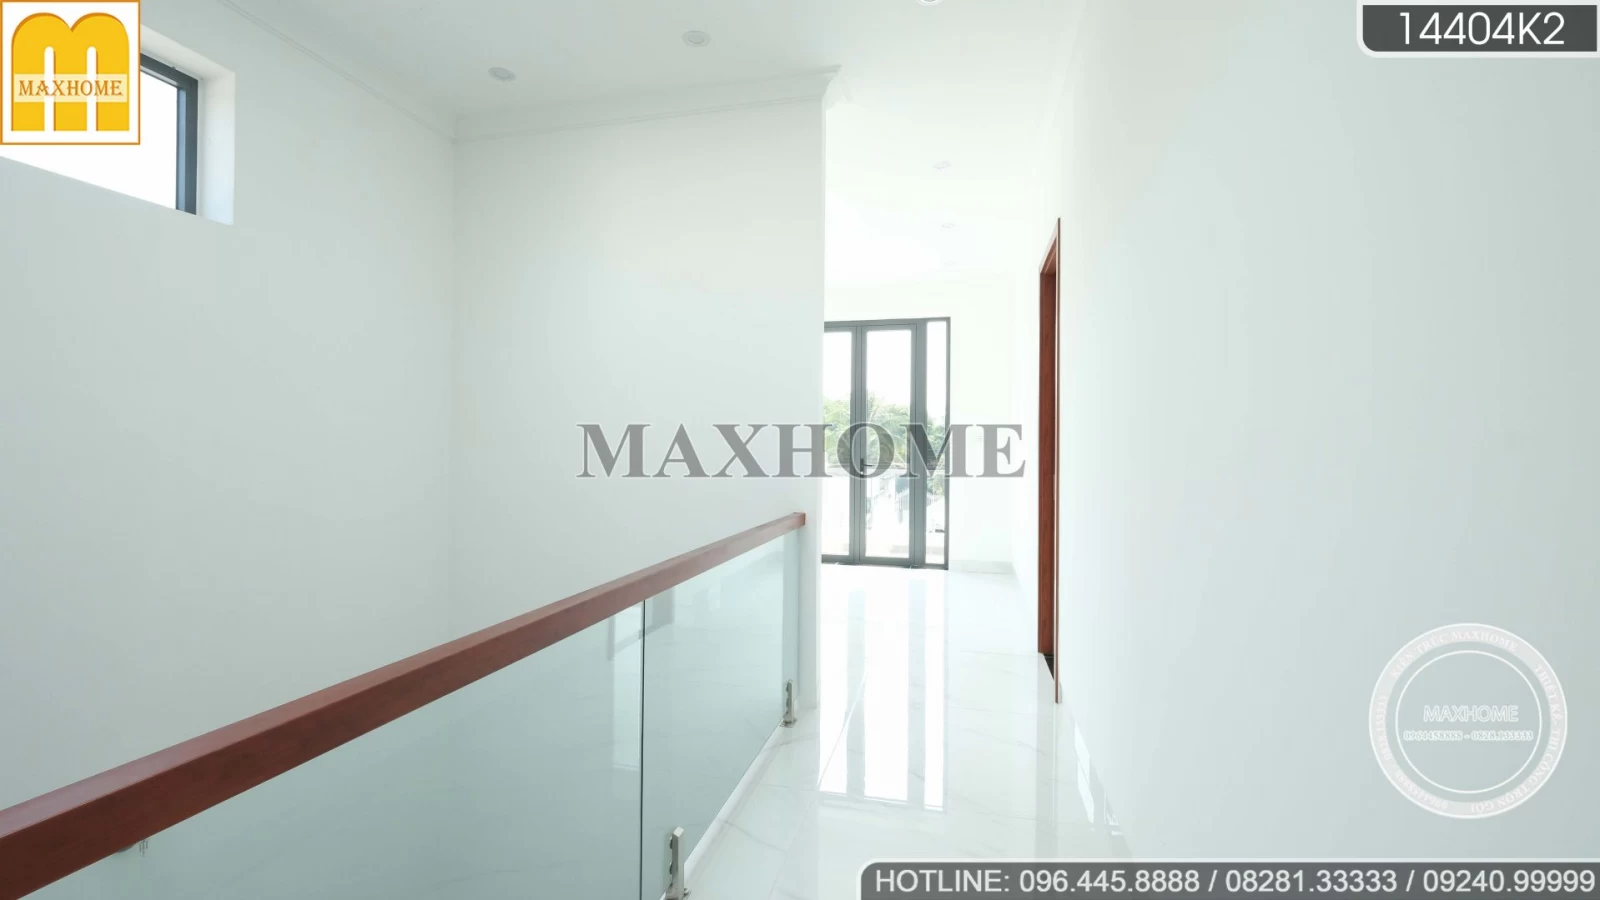 Thực tế căn nhà ở 2 tầng siêu rộng, Maxhome chuẩn bị bàn giao | MH02511